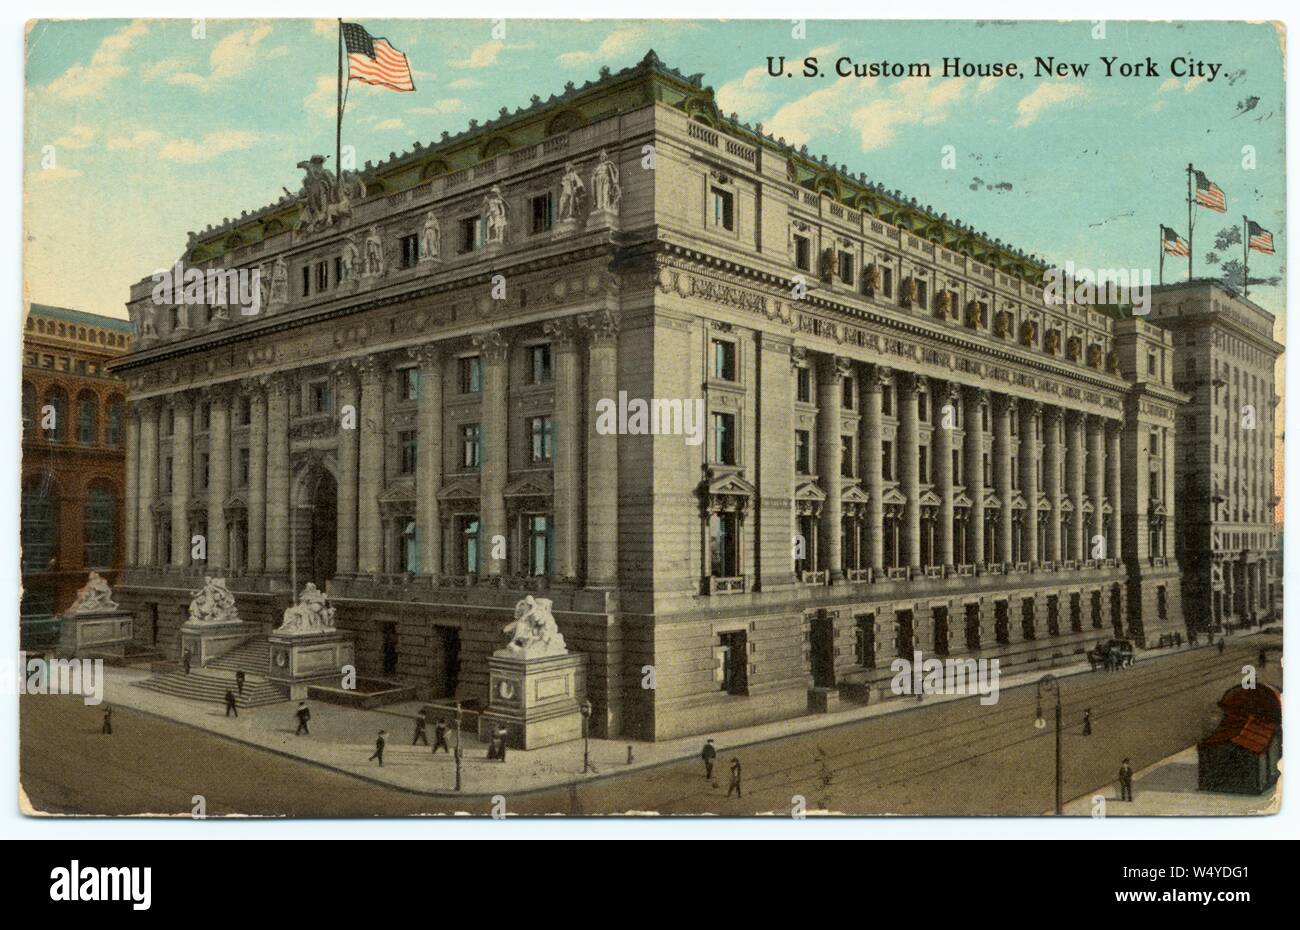 Cartolina incisi degli Stati Uniti Custom House nella città di New York, New York, pubblicato dalla American Art Publishing Co, 1913. Dalla Biblioteca Pubblica di New York. () Foto Stock